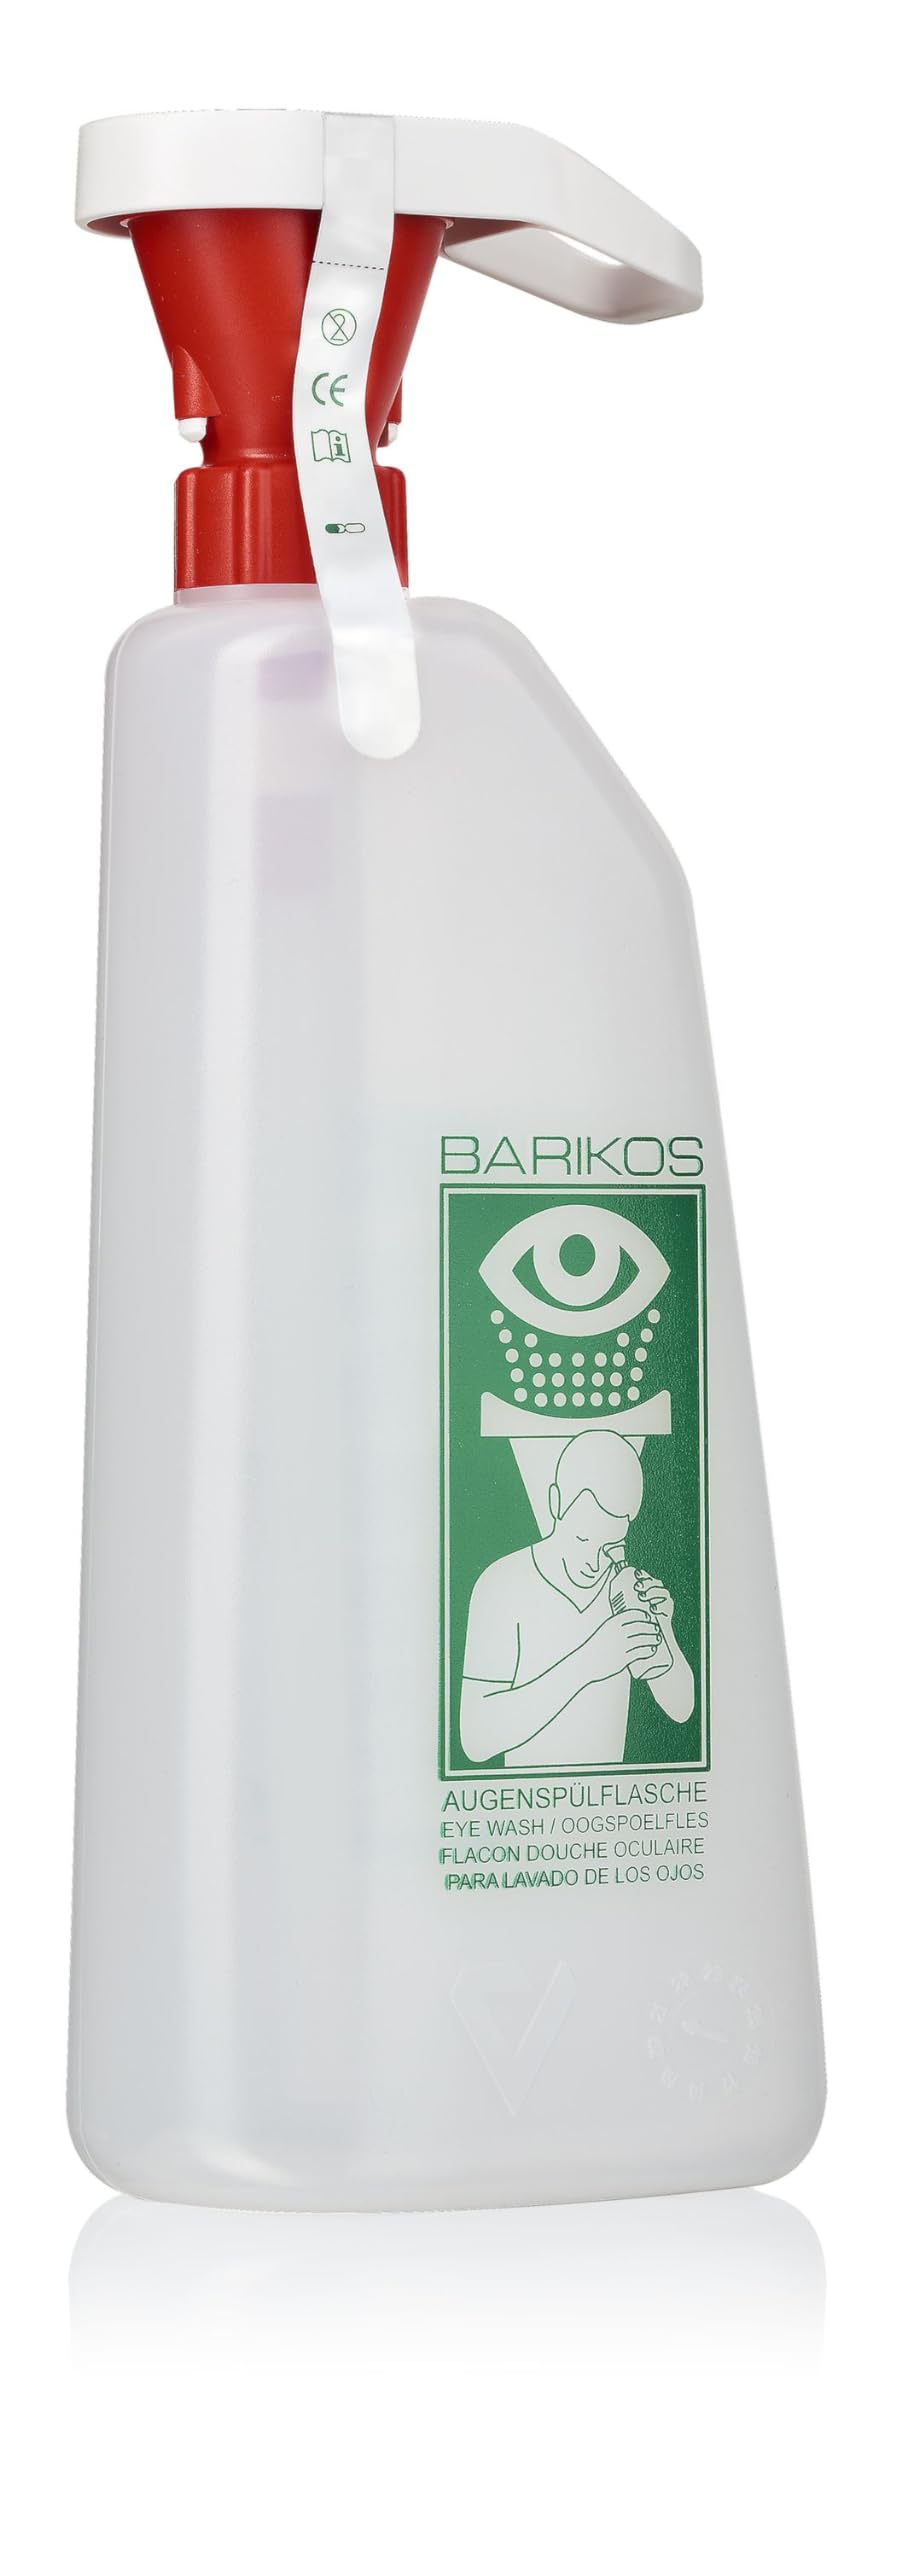 Augenspülflasche BARIKOS KS 620 ml: pH-neutrale Augendusche für Erste Hilfe am Auge